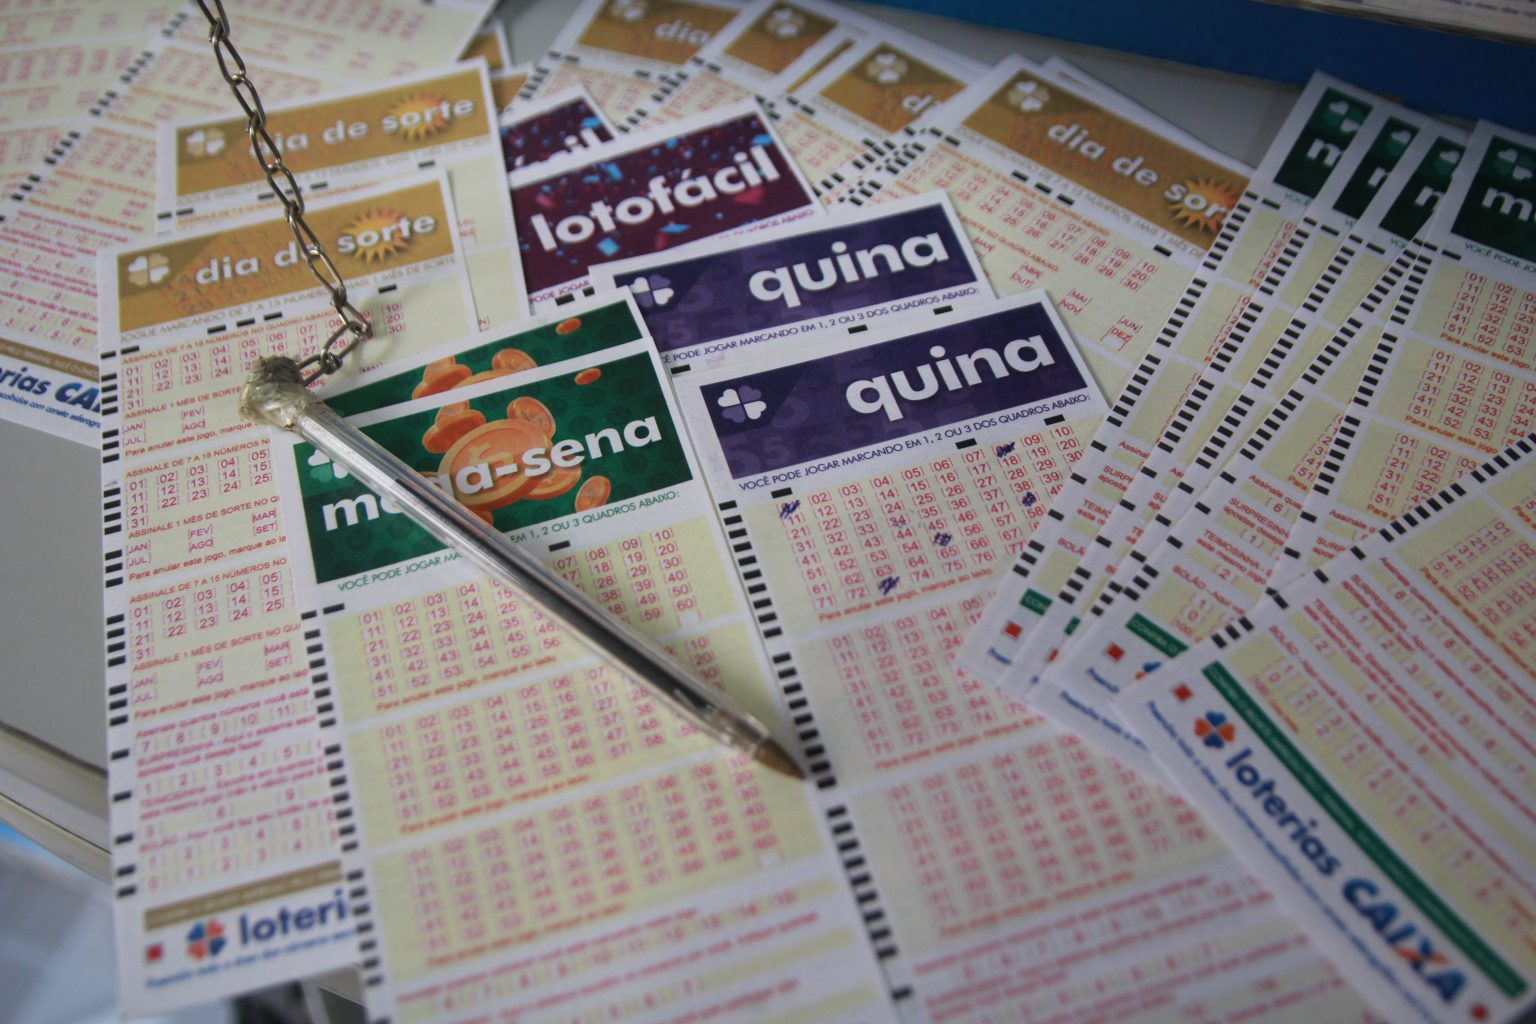 Loterias: confira o resultado da Mega-Sena 2410, Lotofácil 2326 e